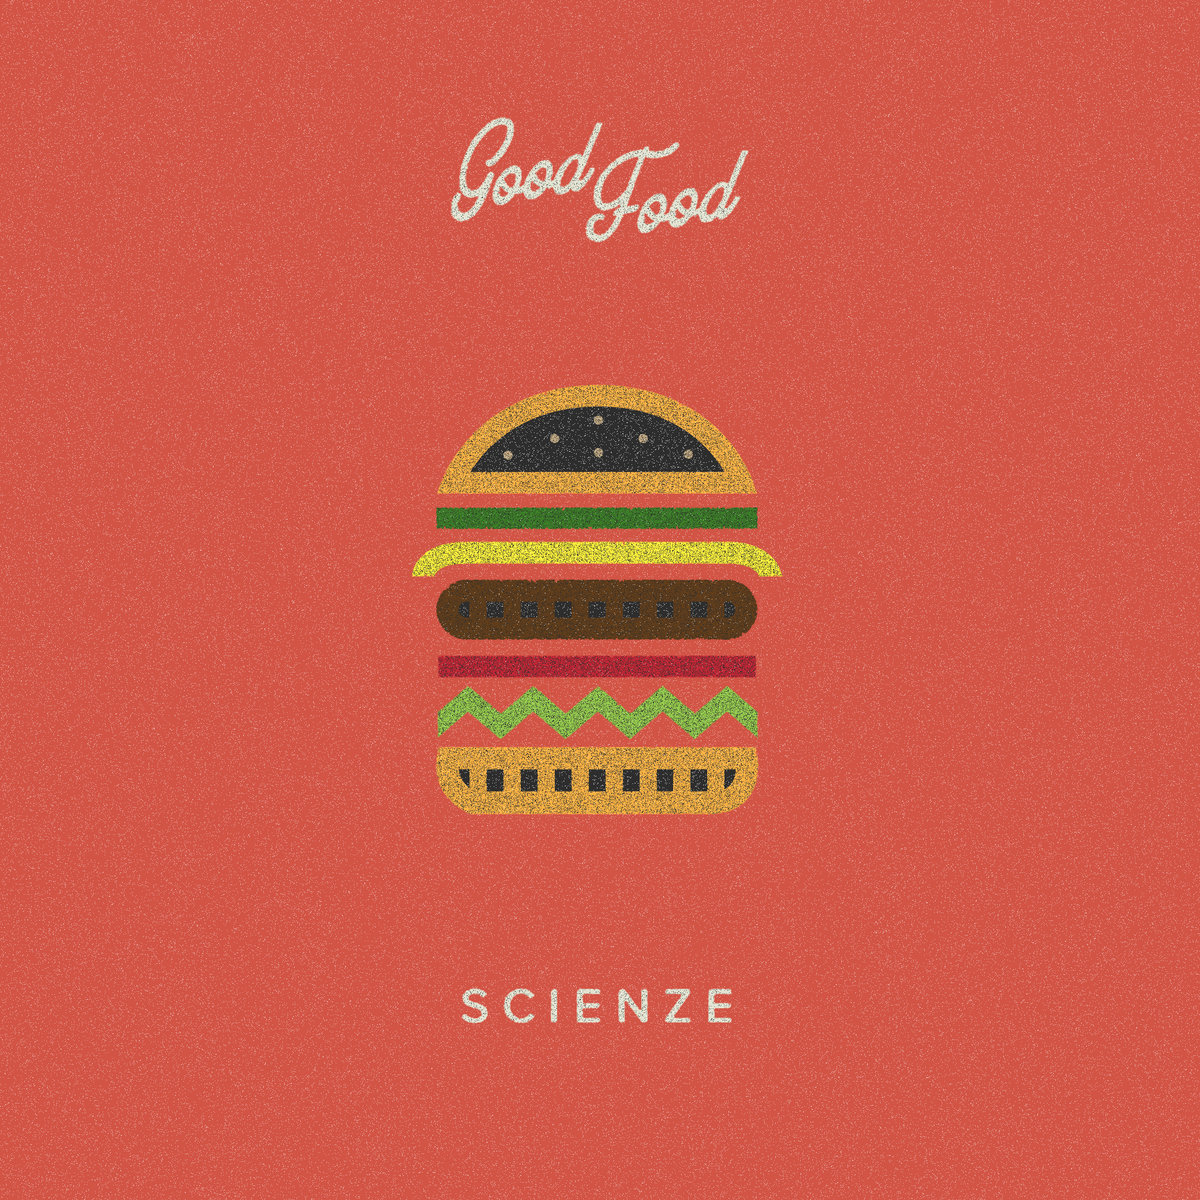 ScienZe - "Good Food" (Release)